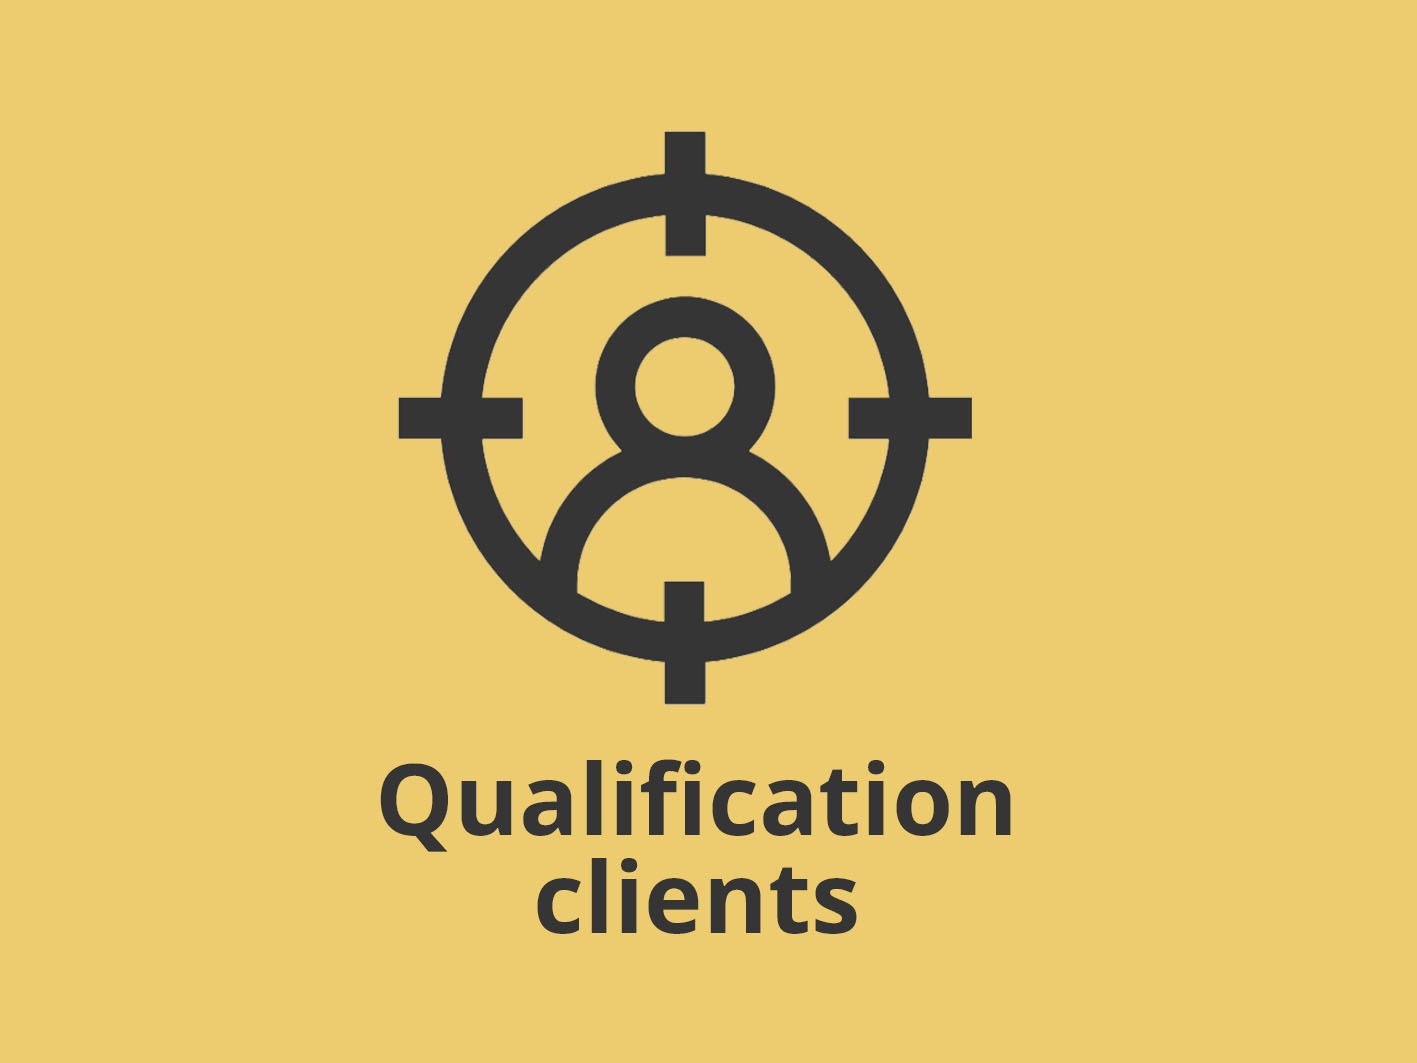 Pictogramme Qualification client et texte "Qualification client"